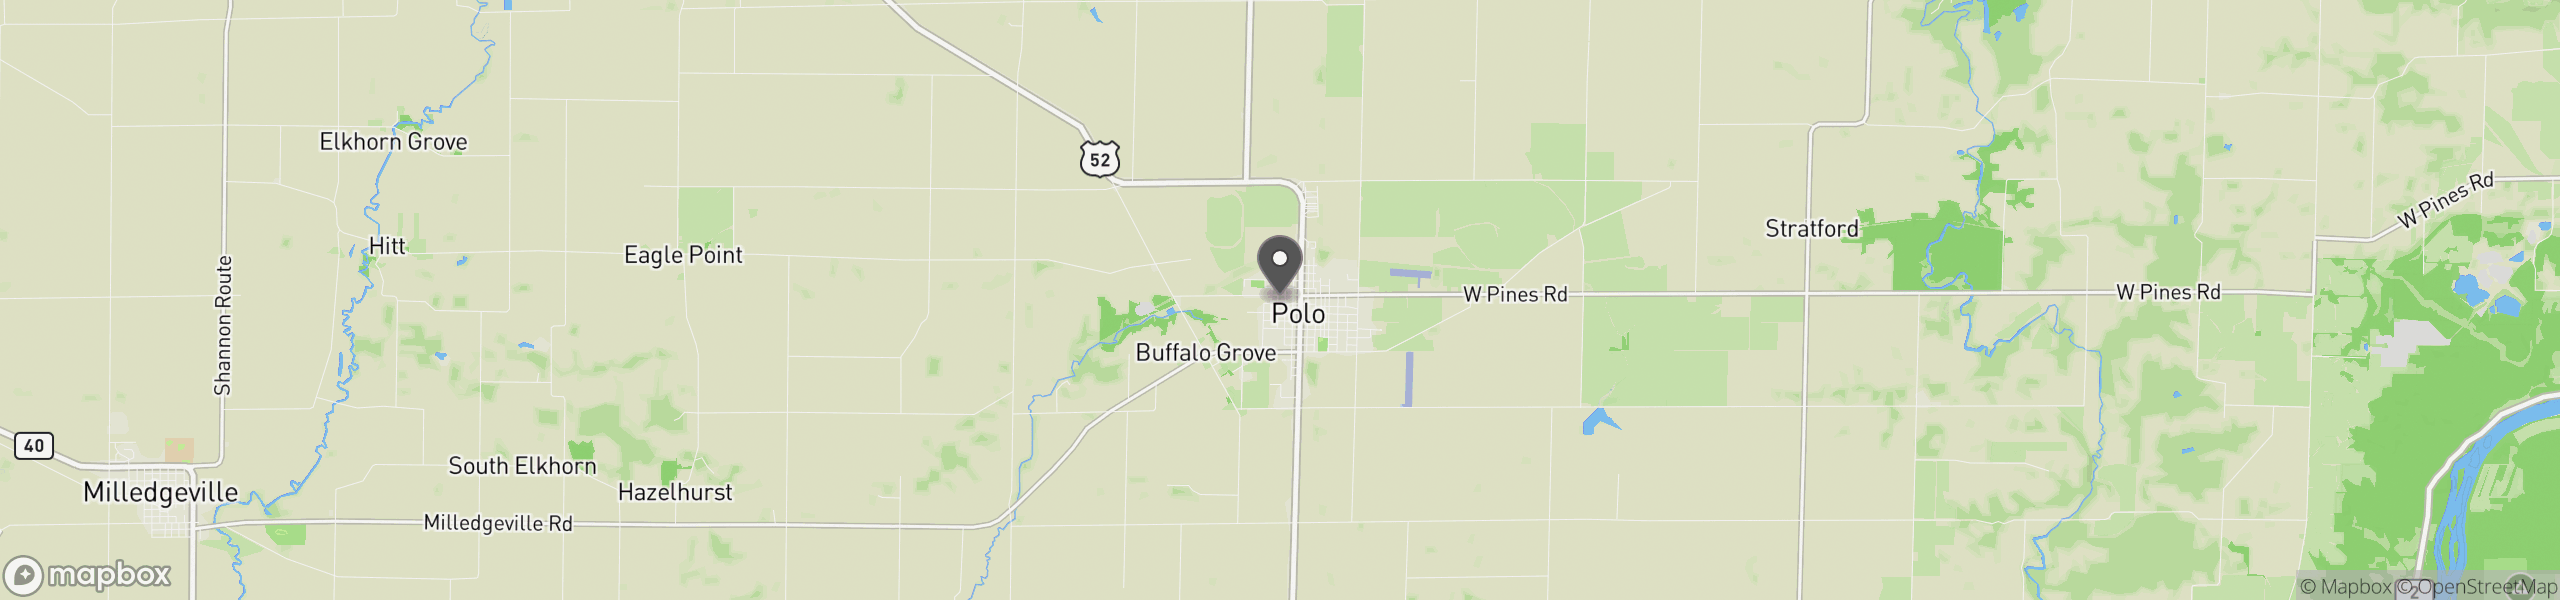 Polo, IL 61064